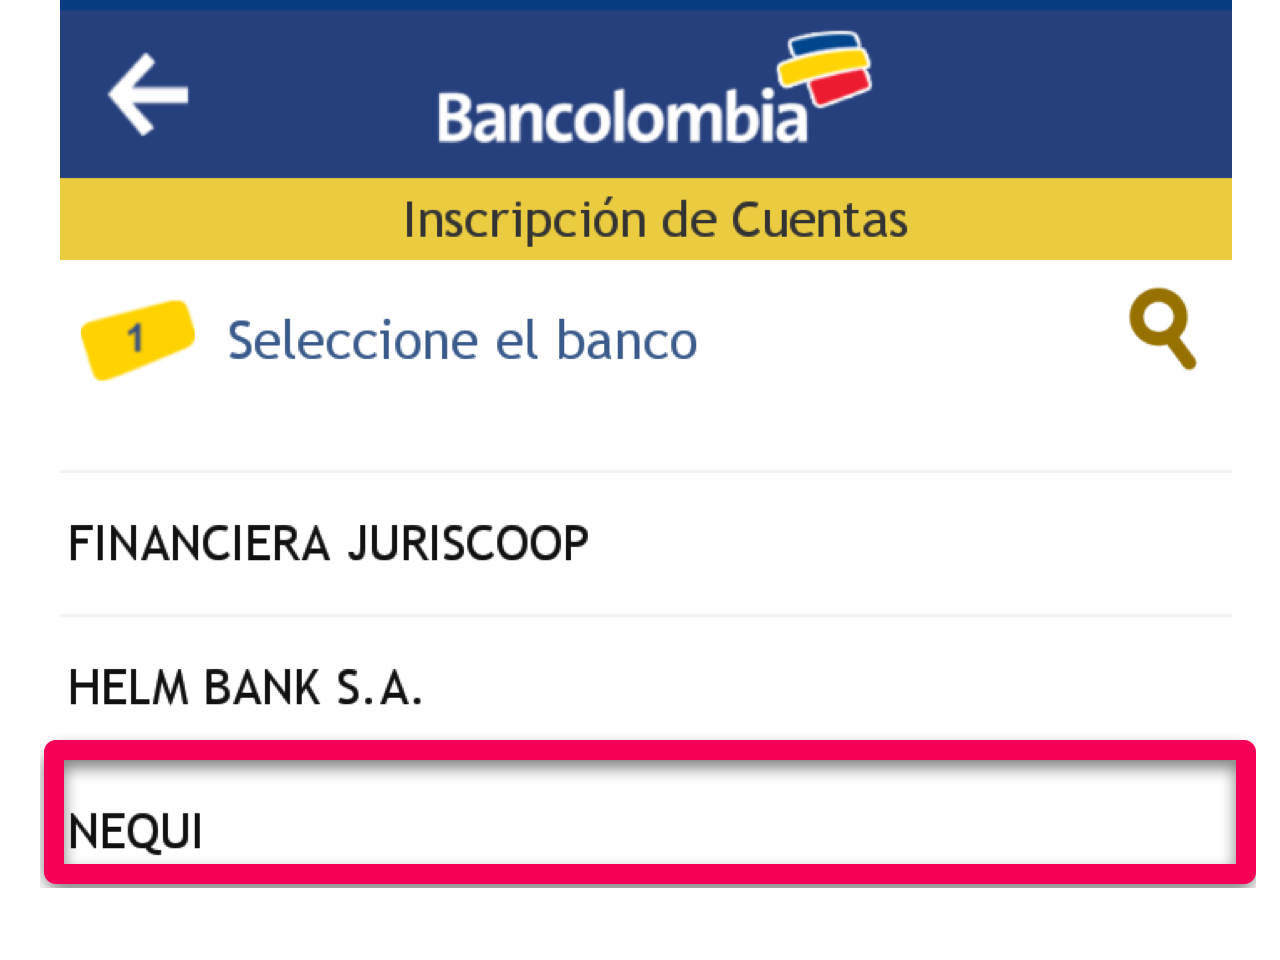 Enviar plata desde Bancolombia a mi Nequi - Centro de ayuda